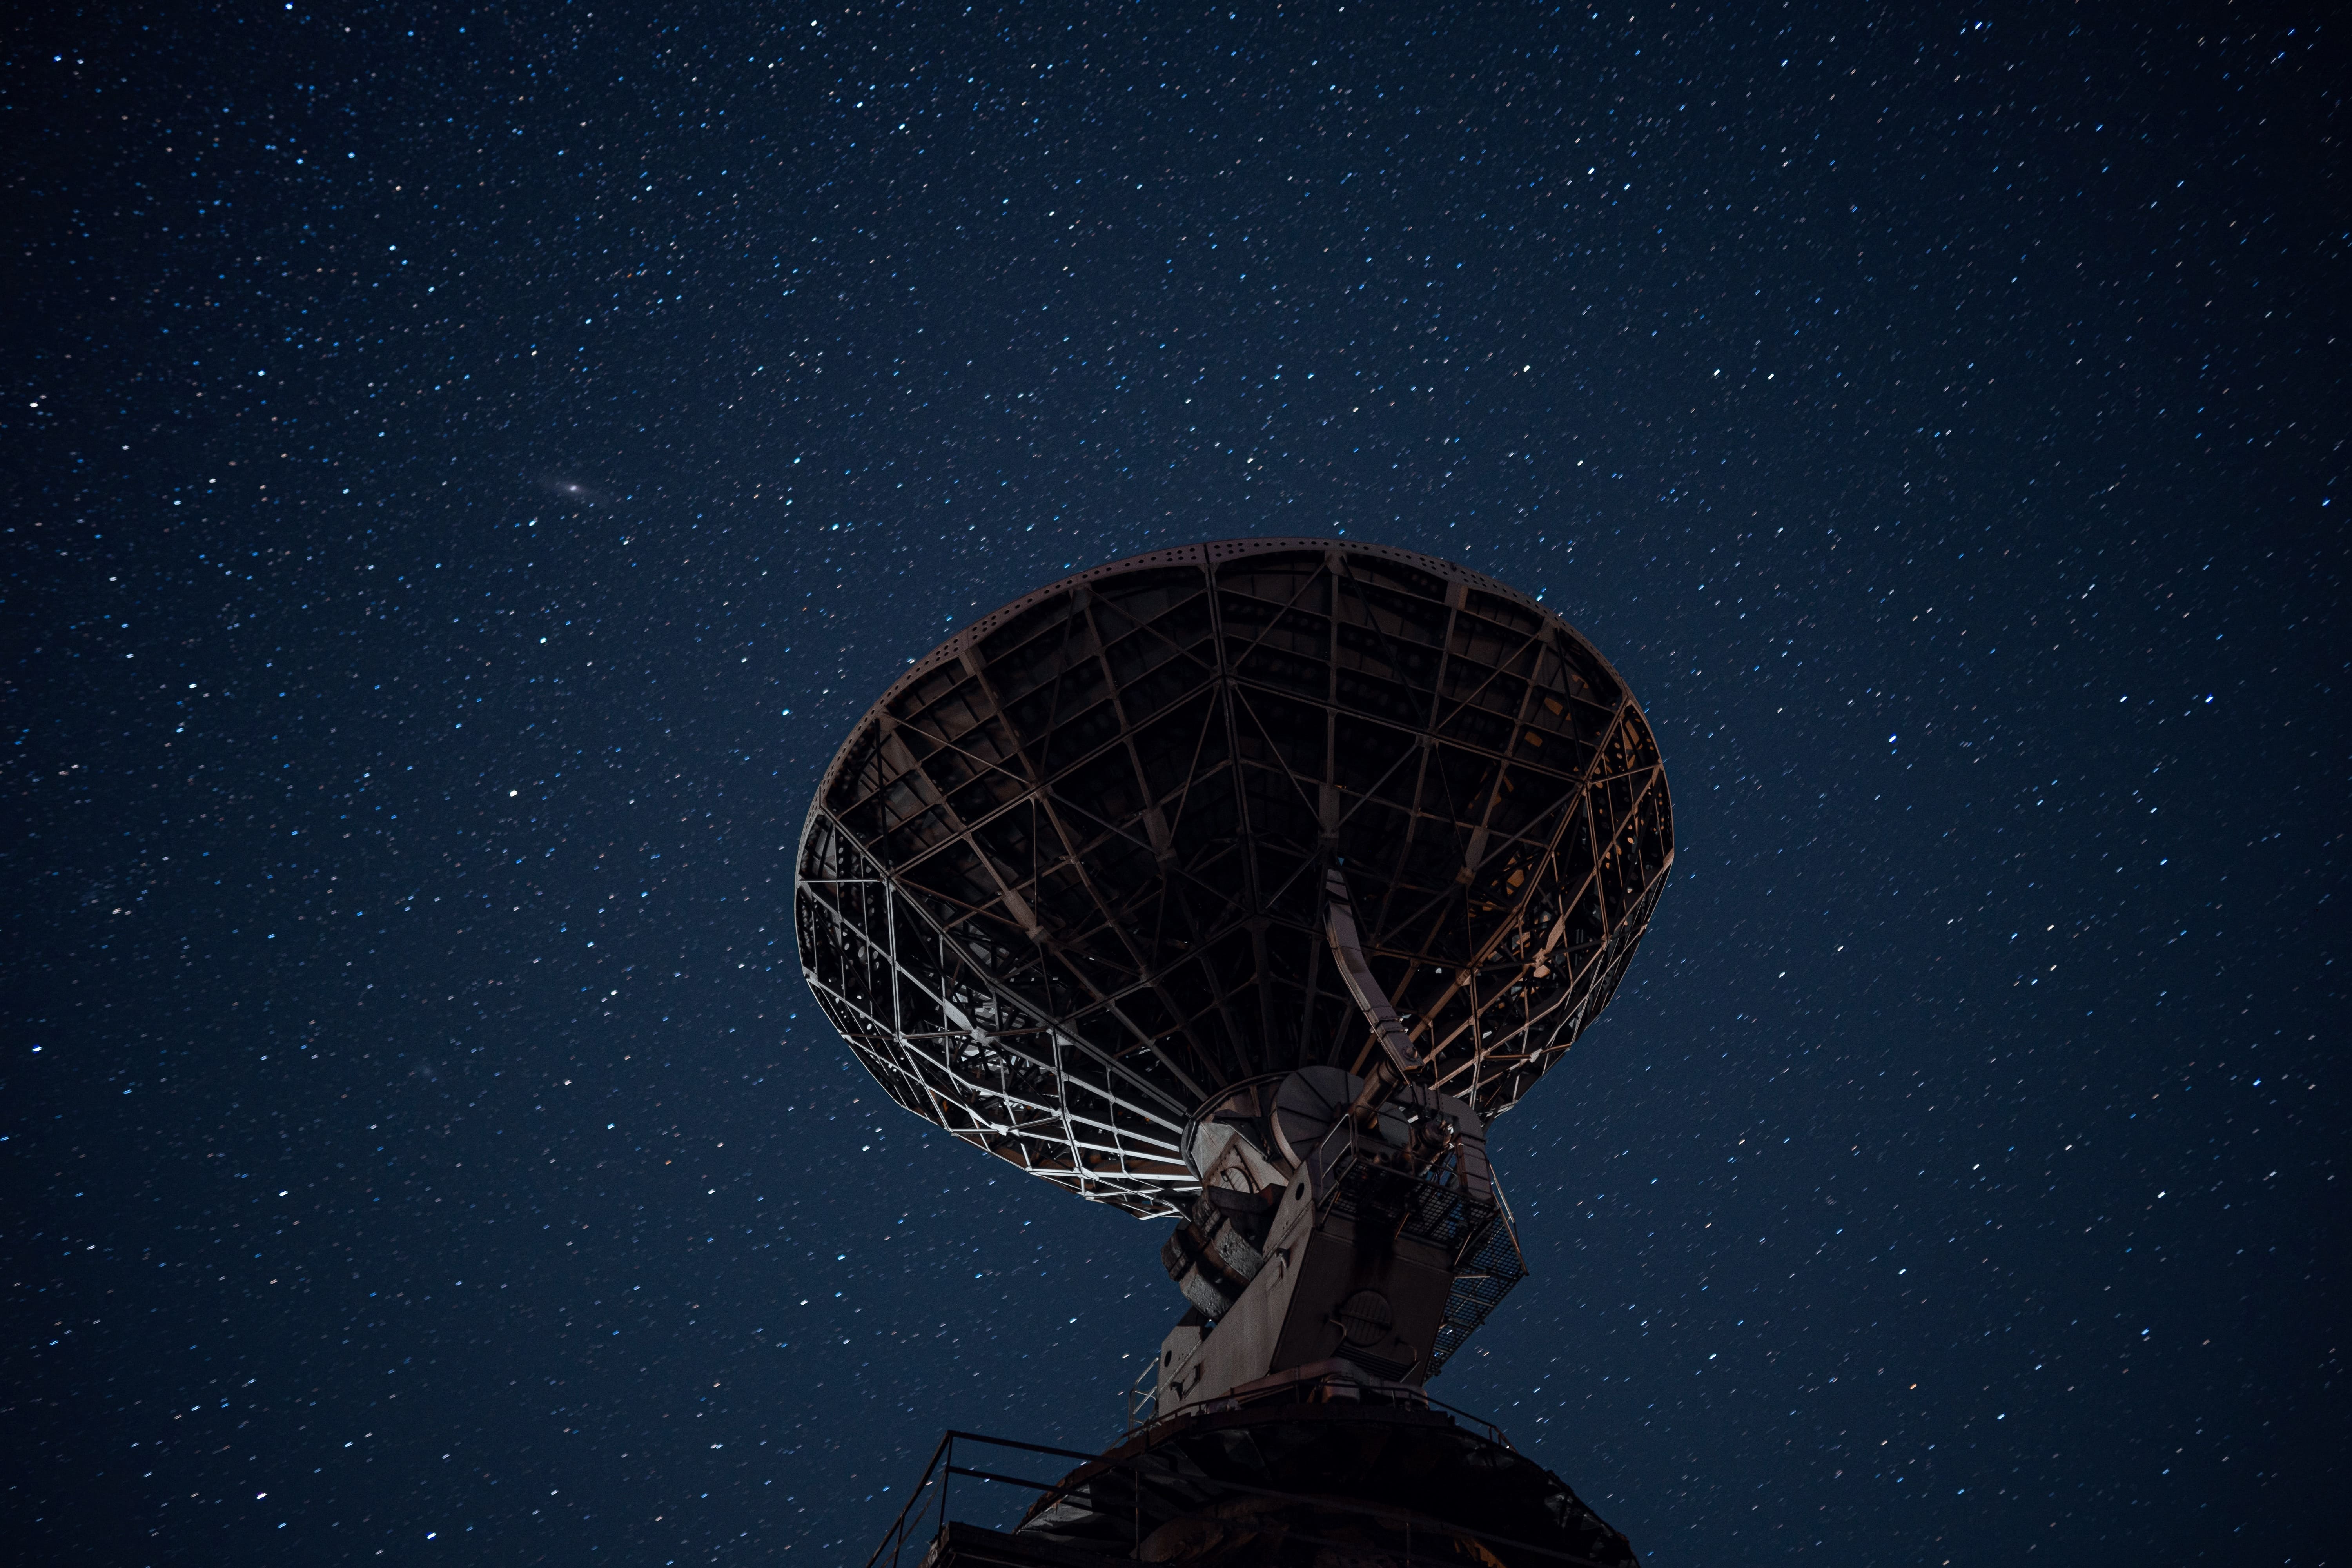 station de base terrestre d'un téléport en forme de parabole géante, pointée vers les étoiles